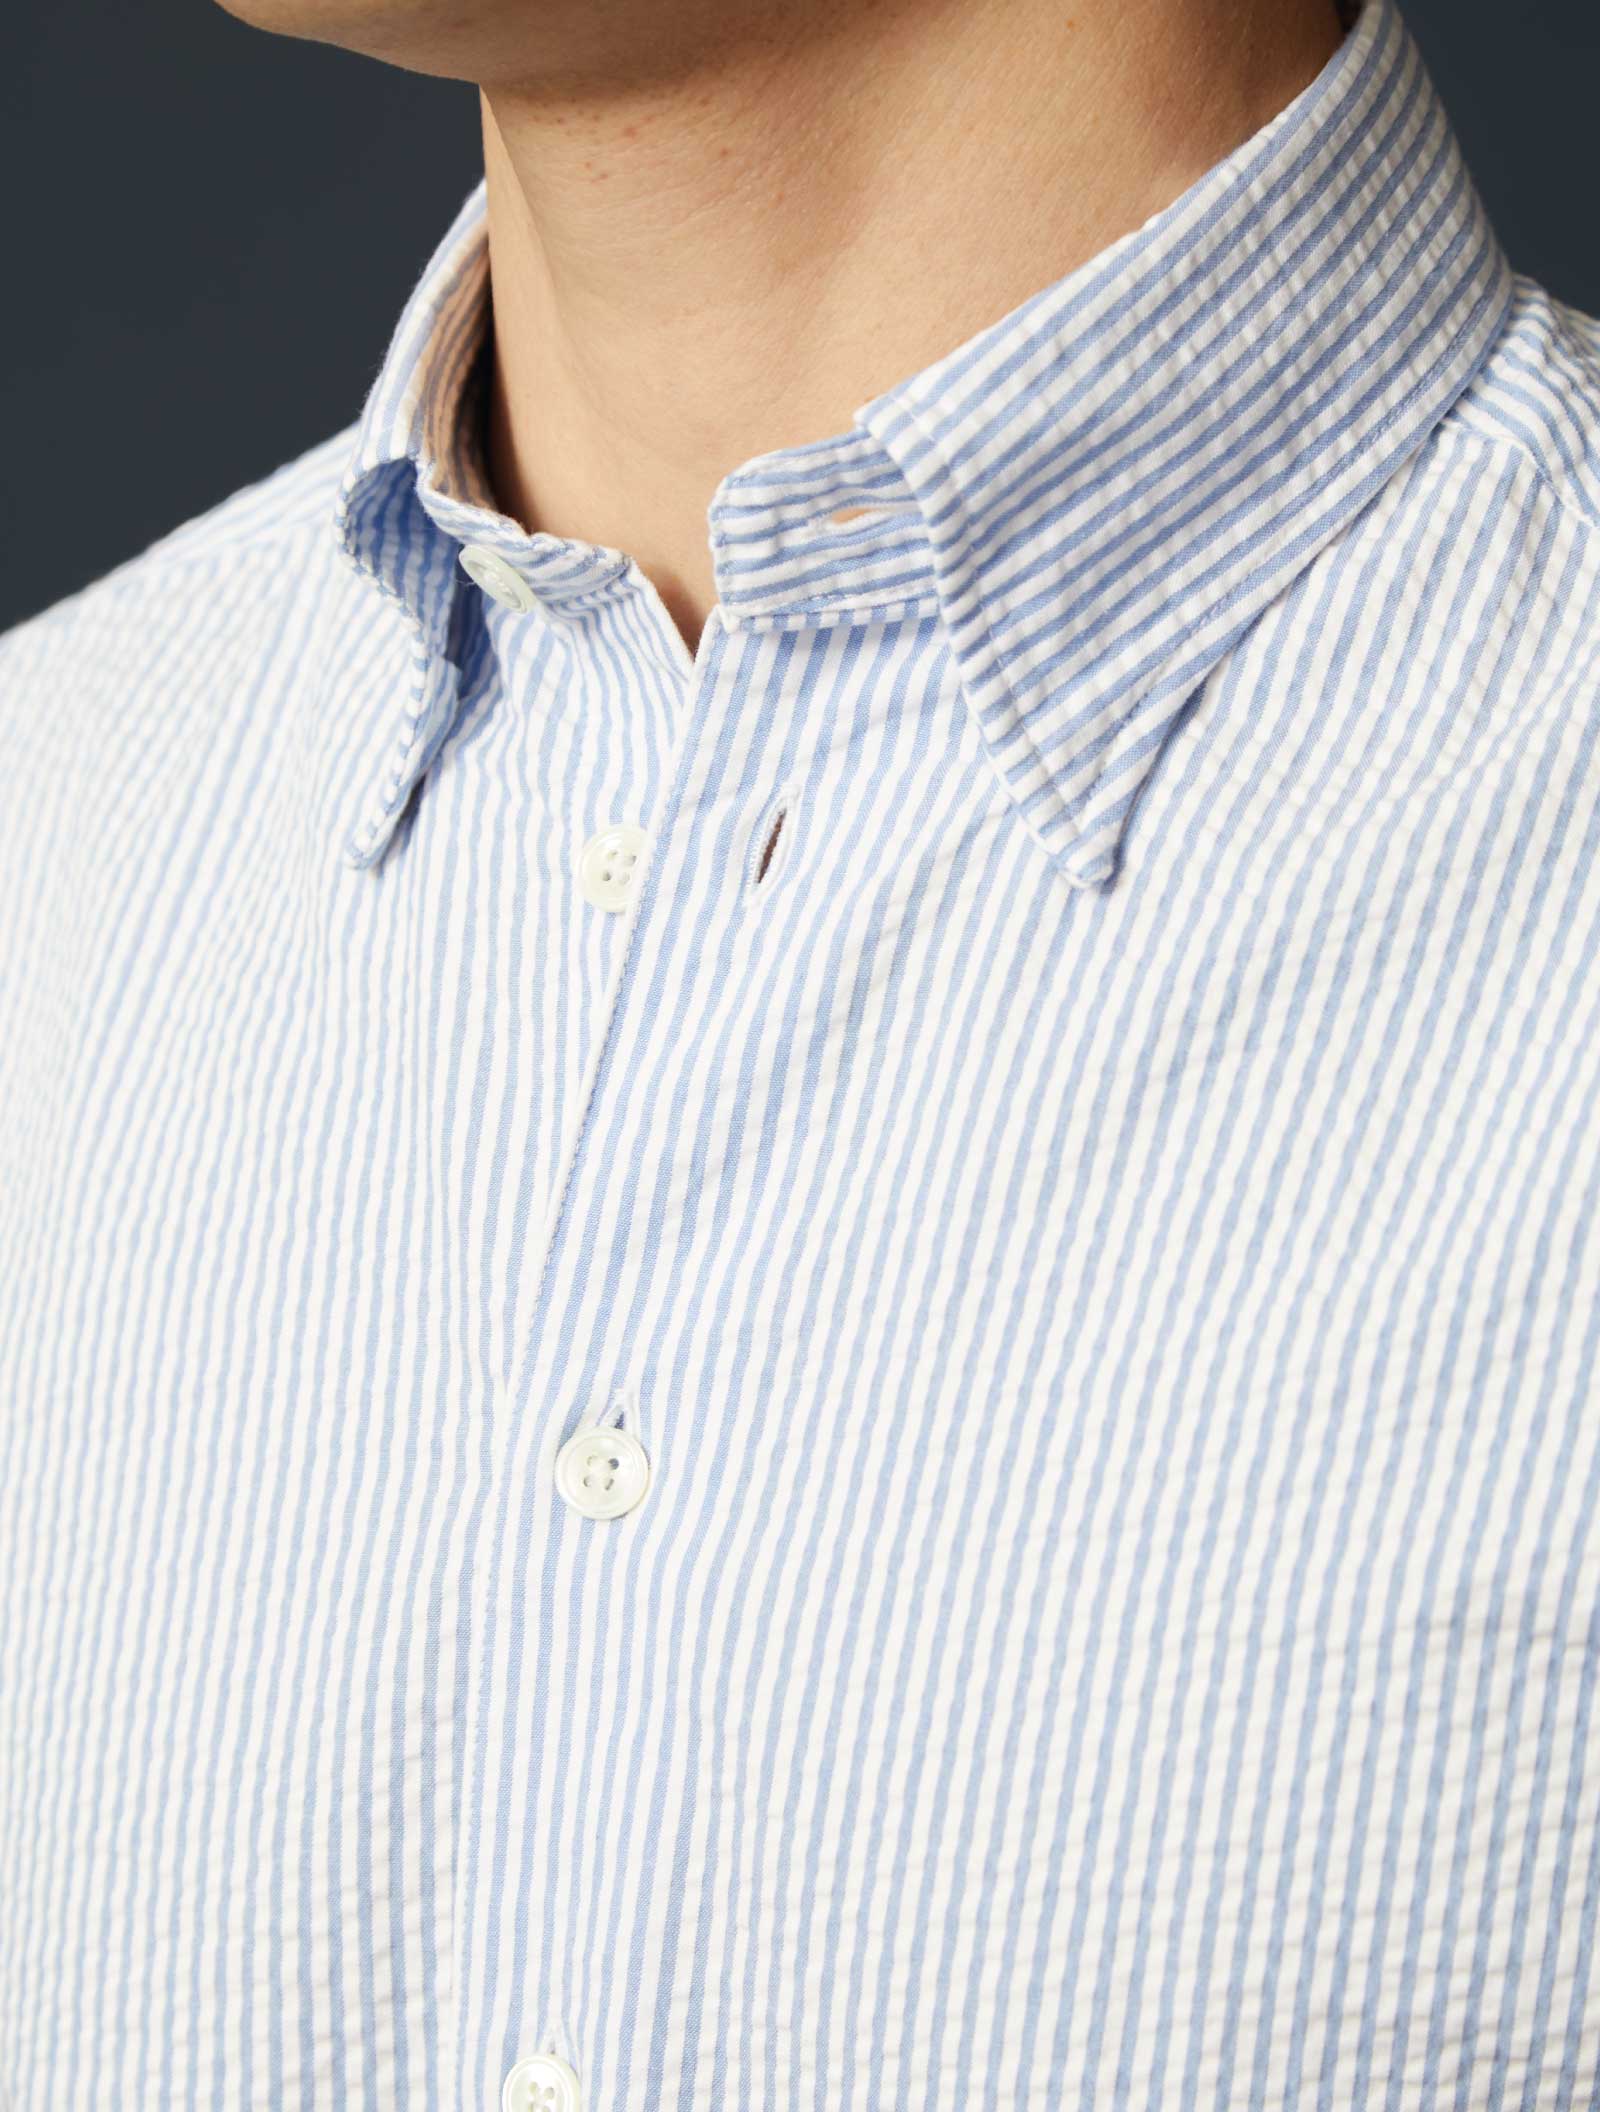 Appearance-seersucker-skjorte-blåstribet-blå-stribet-seersucker-shirt-brilliant-light-blue-white-herre